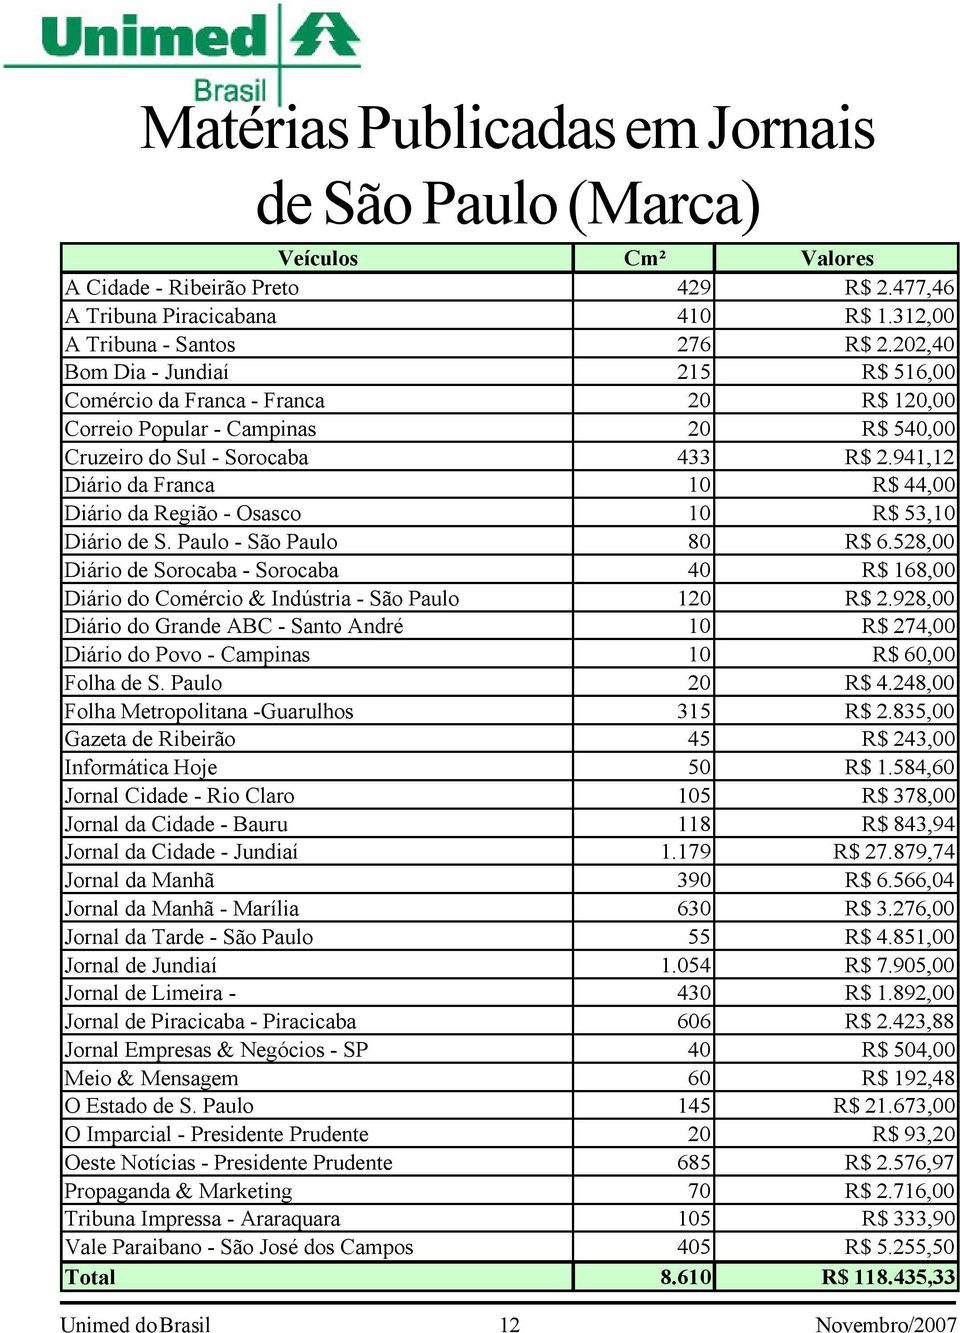 941,12 Diário da Franca 10 R$ 44,00 Diário da Região - Osasco 10 R$ 53,10 Diário de S. Paulo - São Paulo 80 R$ 6.